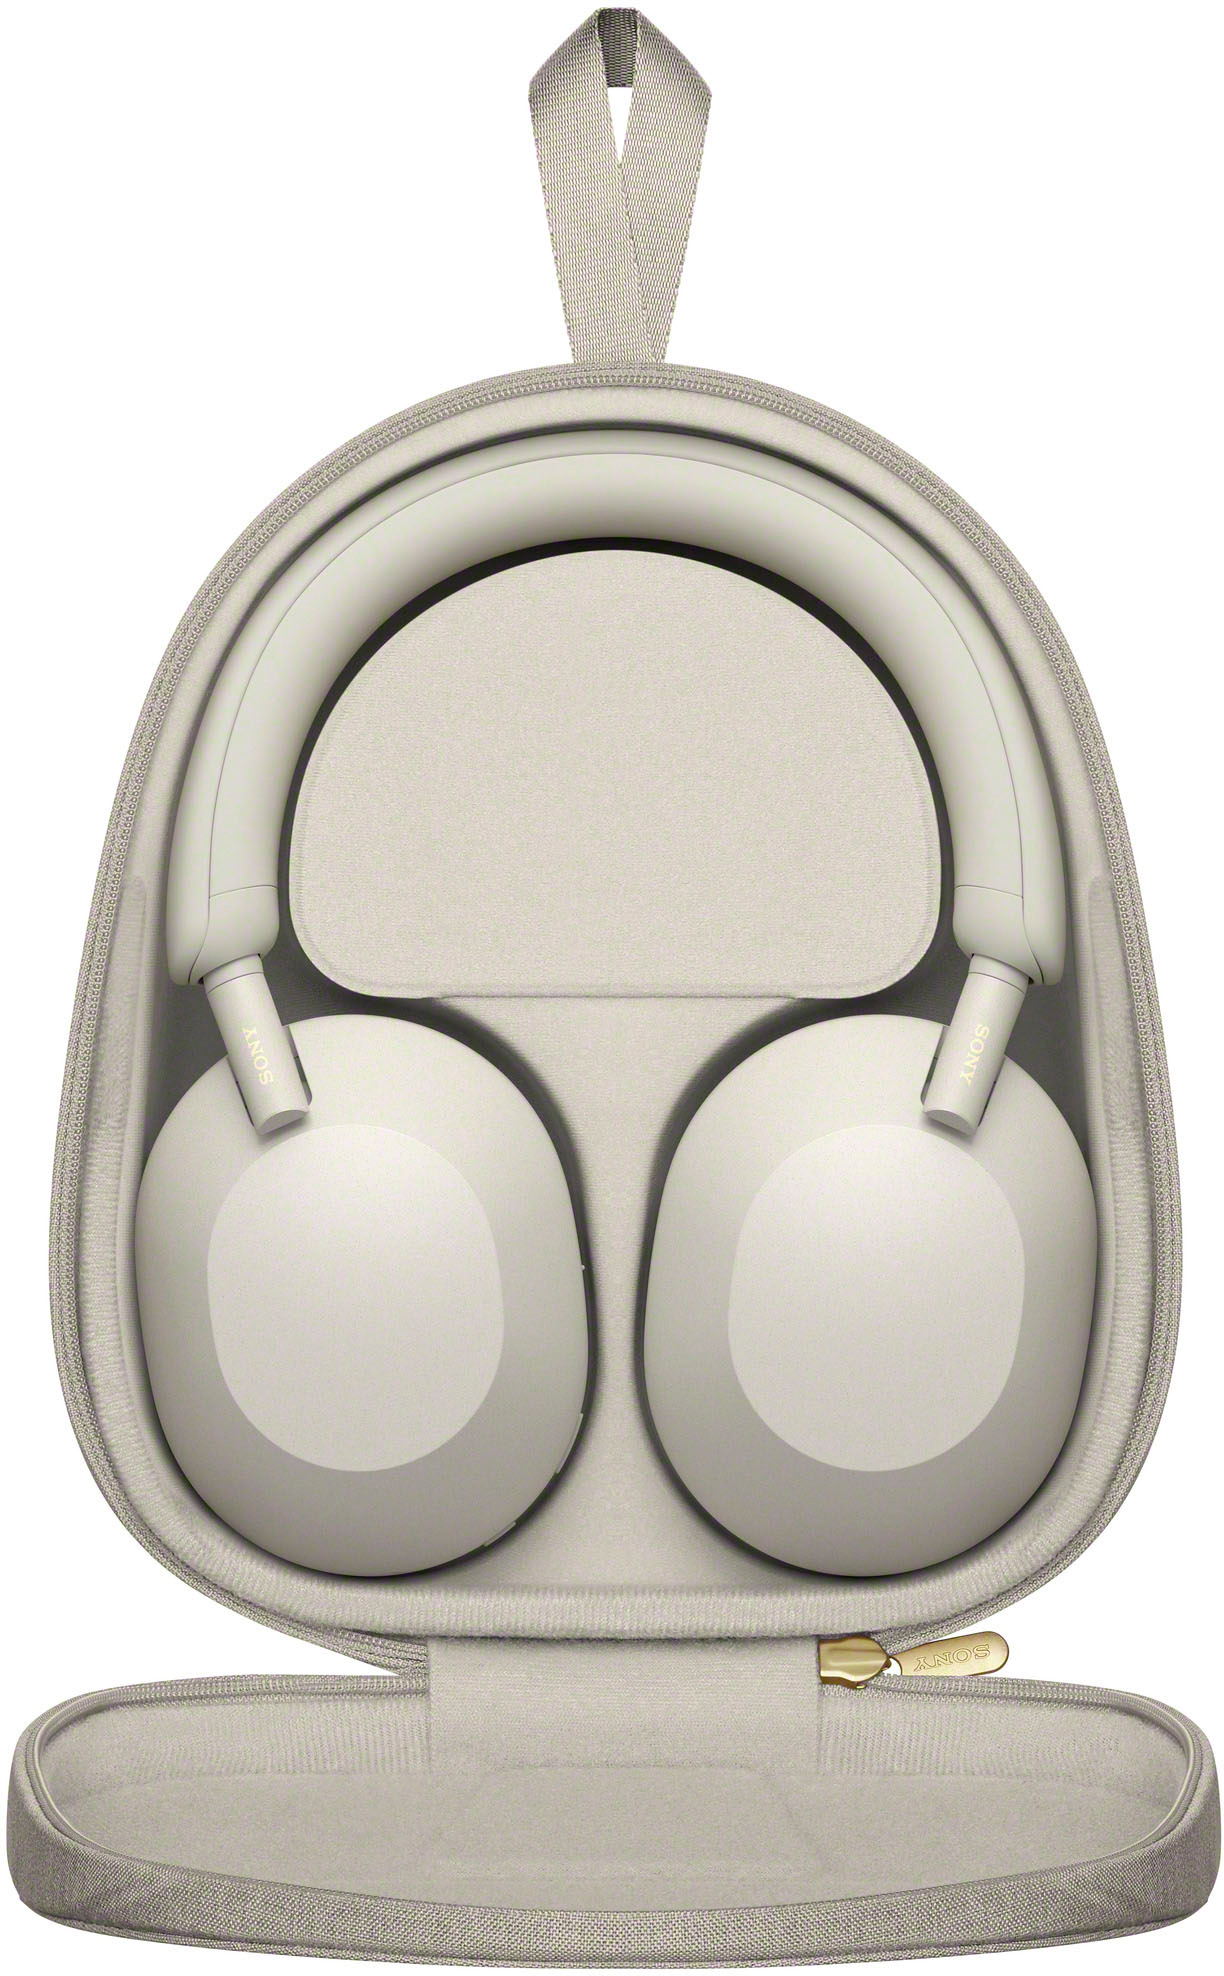 オーディオ機器 ヘッドフォン Sony WH-1000XM5 Wireless Noise-Canceling Over-the-Ear Headphones 